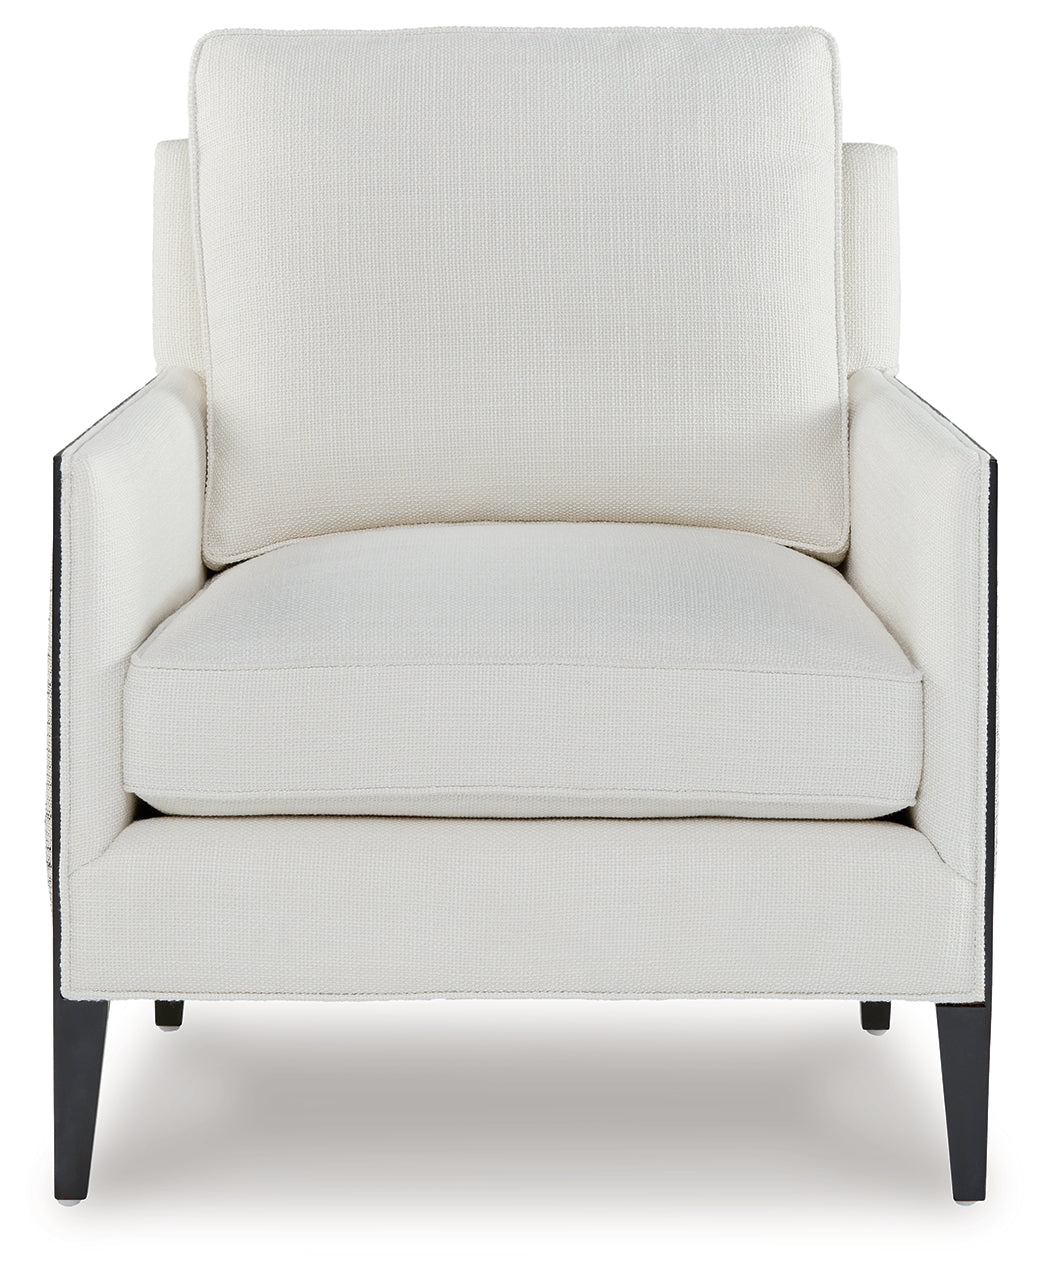 Ardenworth Black/Ivory Accent Chair - A3000647 - Luna Furniture